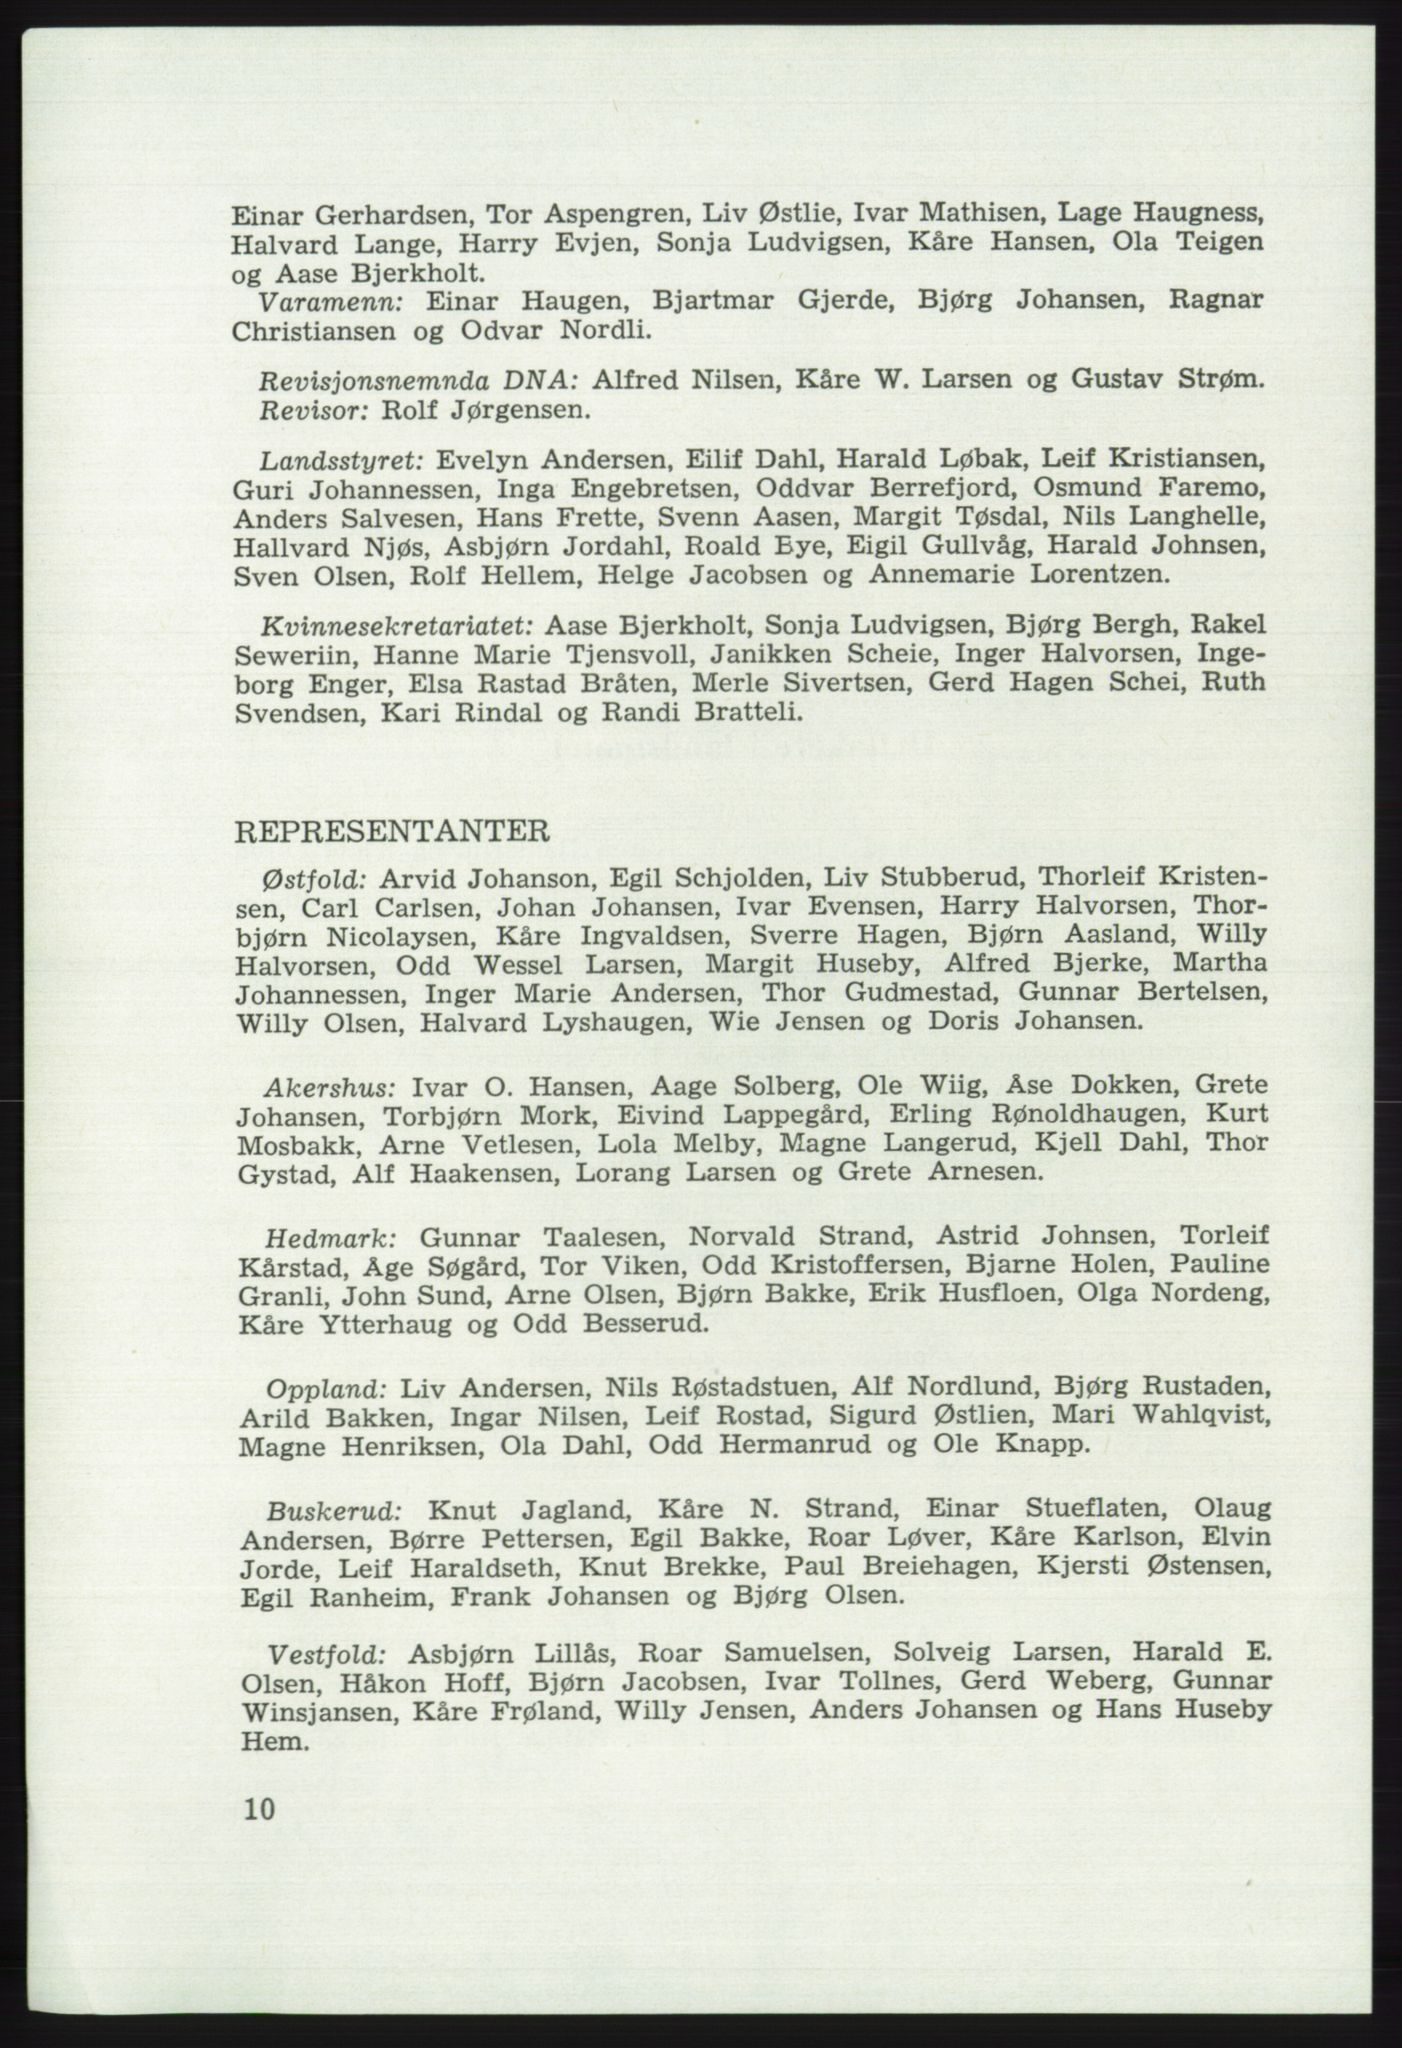 Det norske Arbeiderparti - publikasjoner, AAB/-/-/-: Protokoll over forhandlingene på det 41. ordinære landsmøte 21.-23. mai 1967 i Oslo, 1967, p. 10